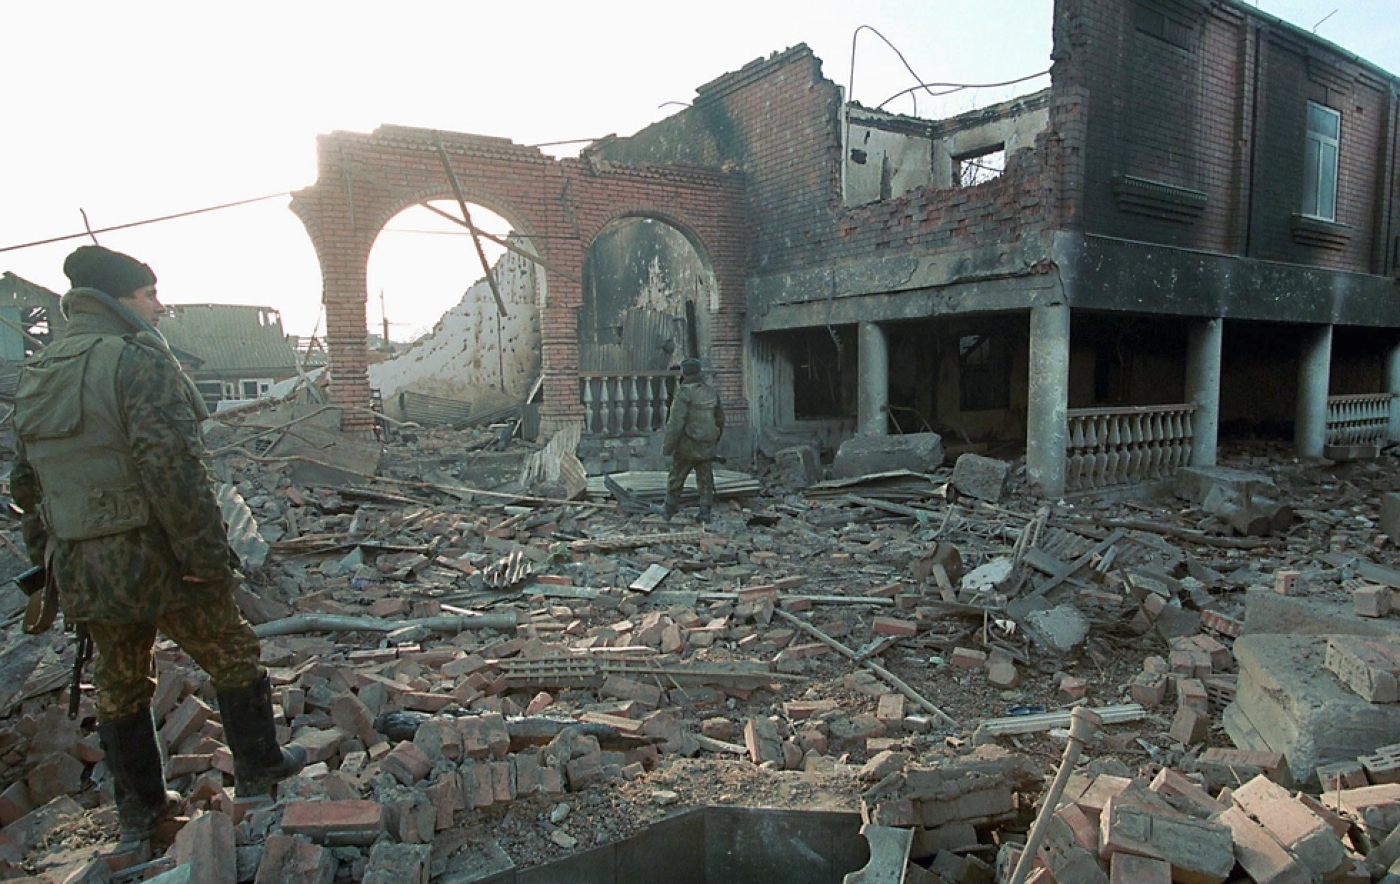 Теракт перед чеченской войной. Грозный мертвые боевики 1995.